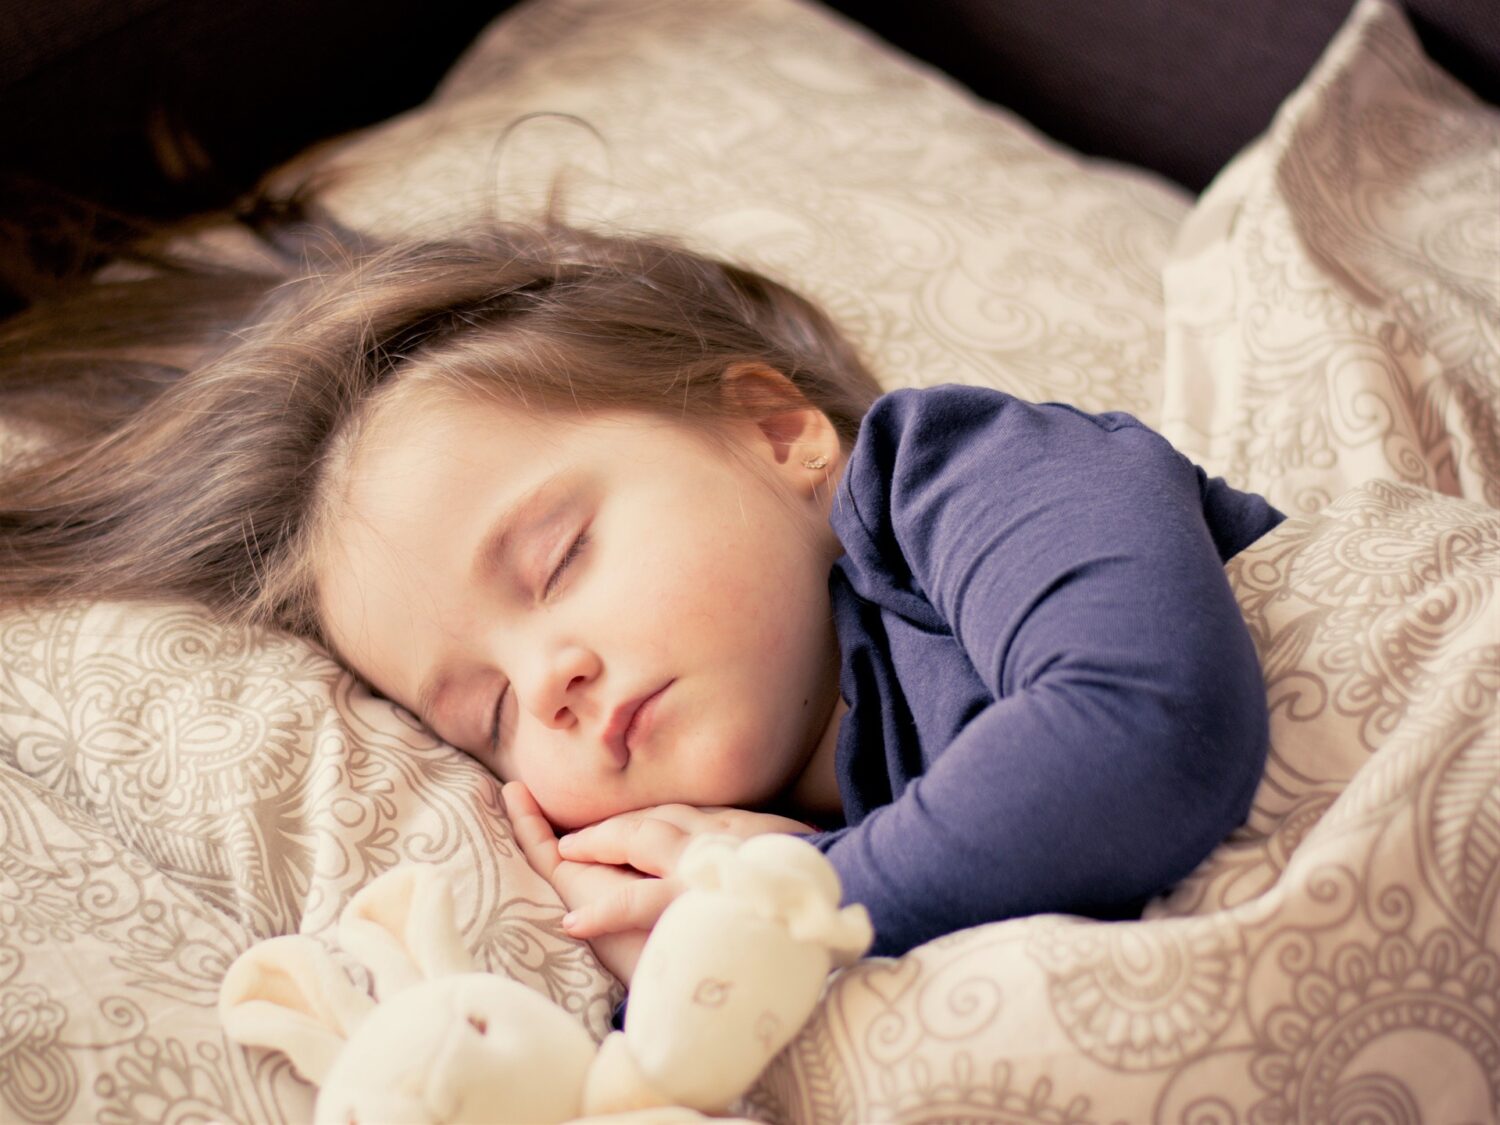 Dobrej jakości pościel dla dzieci jest gwarancją zdrowego i spokojnego snu